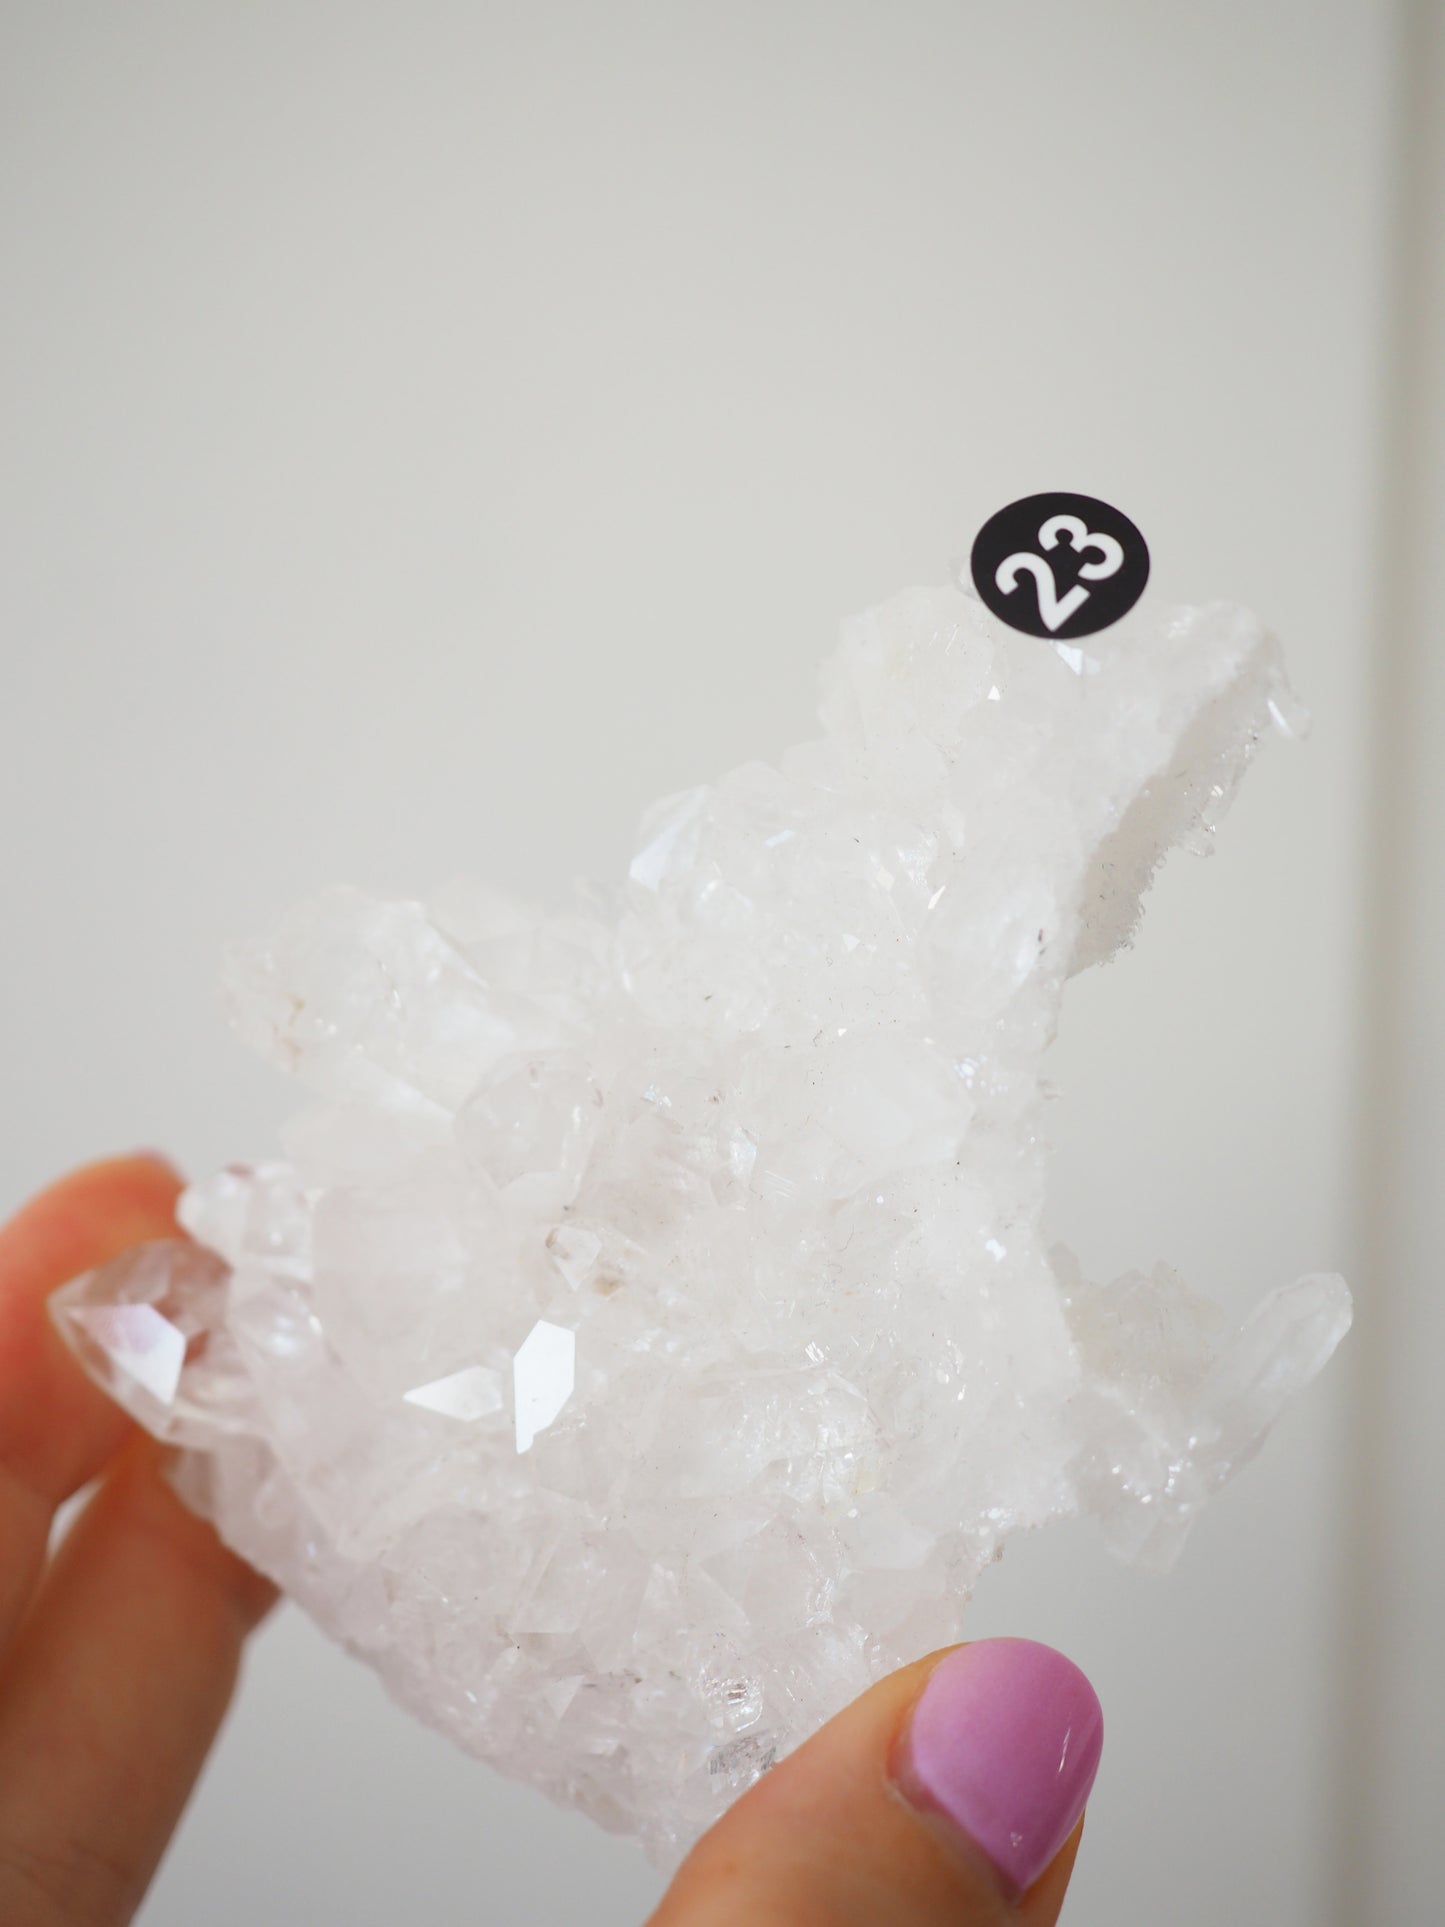 Bergkristall Cluster mit Regenbögen ca 9cm [23] - aus Minas Gerais Brasilien HIGH QUALITY